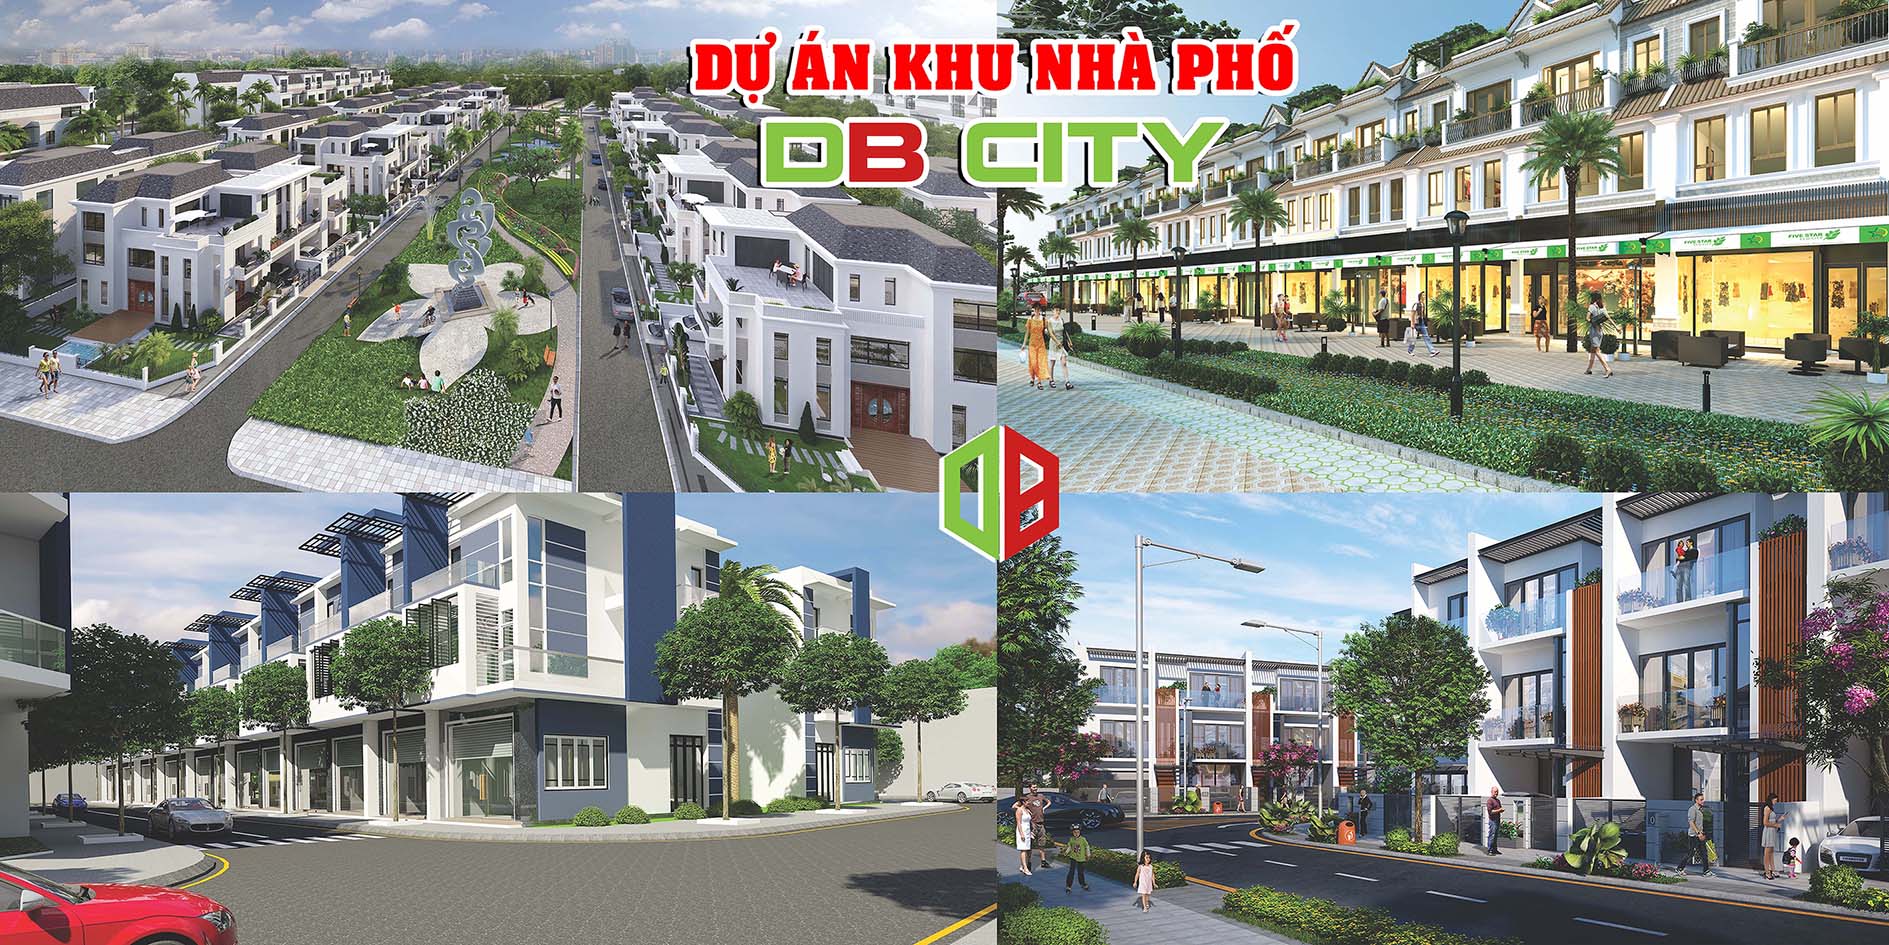 Khu dân cư DBCITY- Khu dân cư đầu tiên tại Tây Ninh